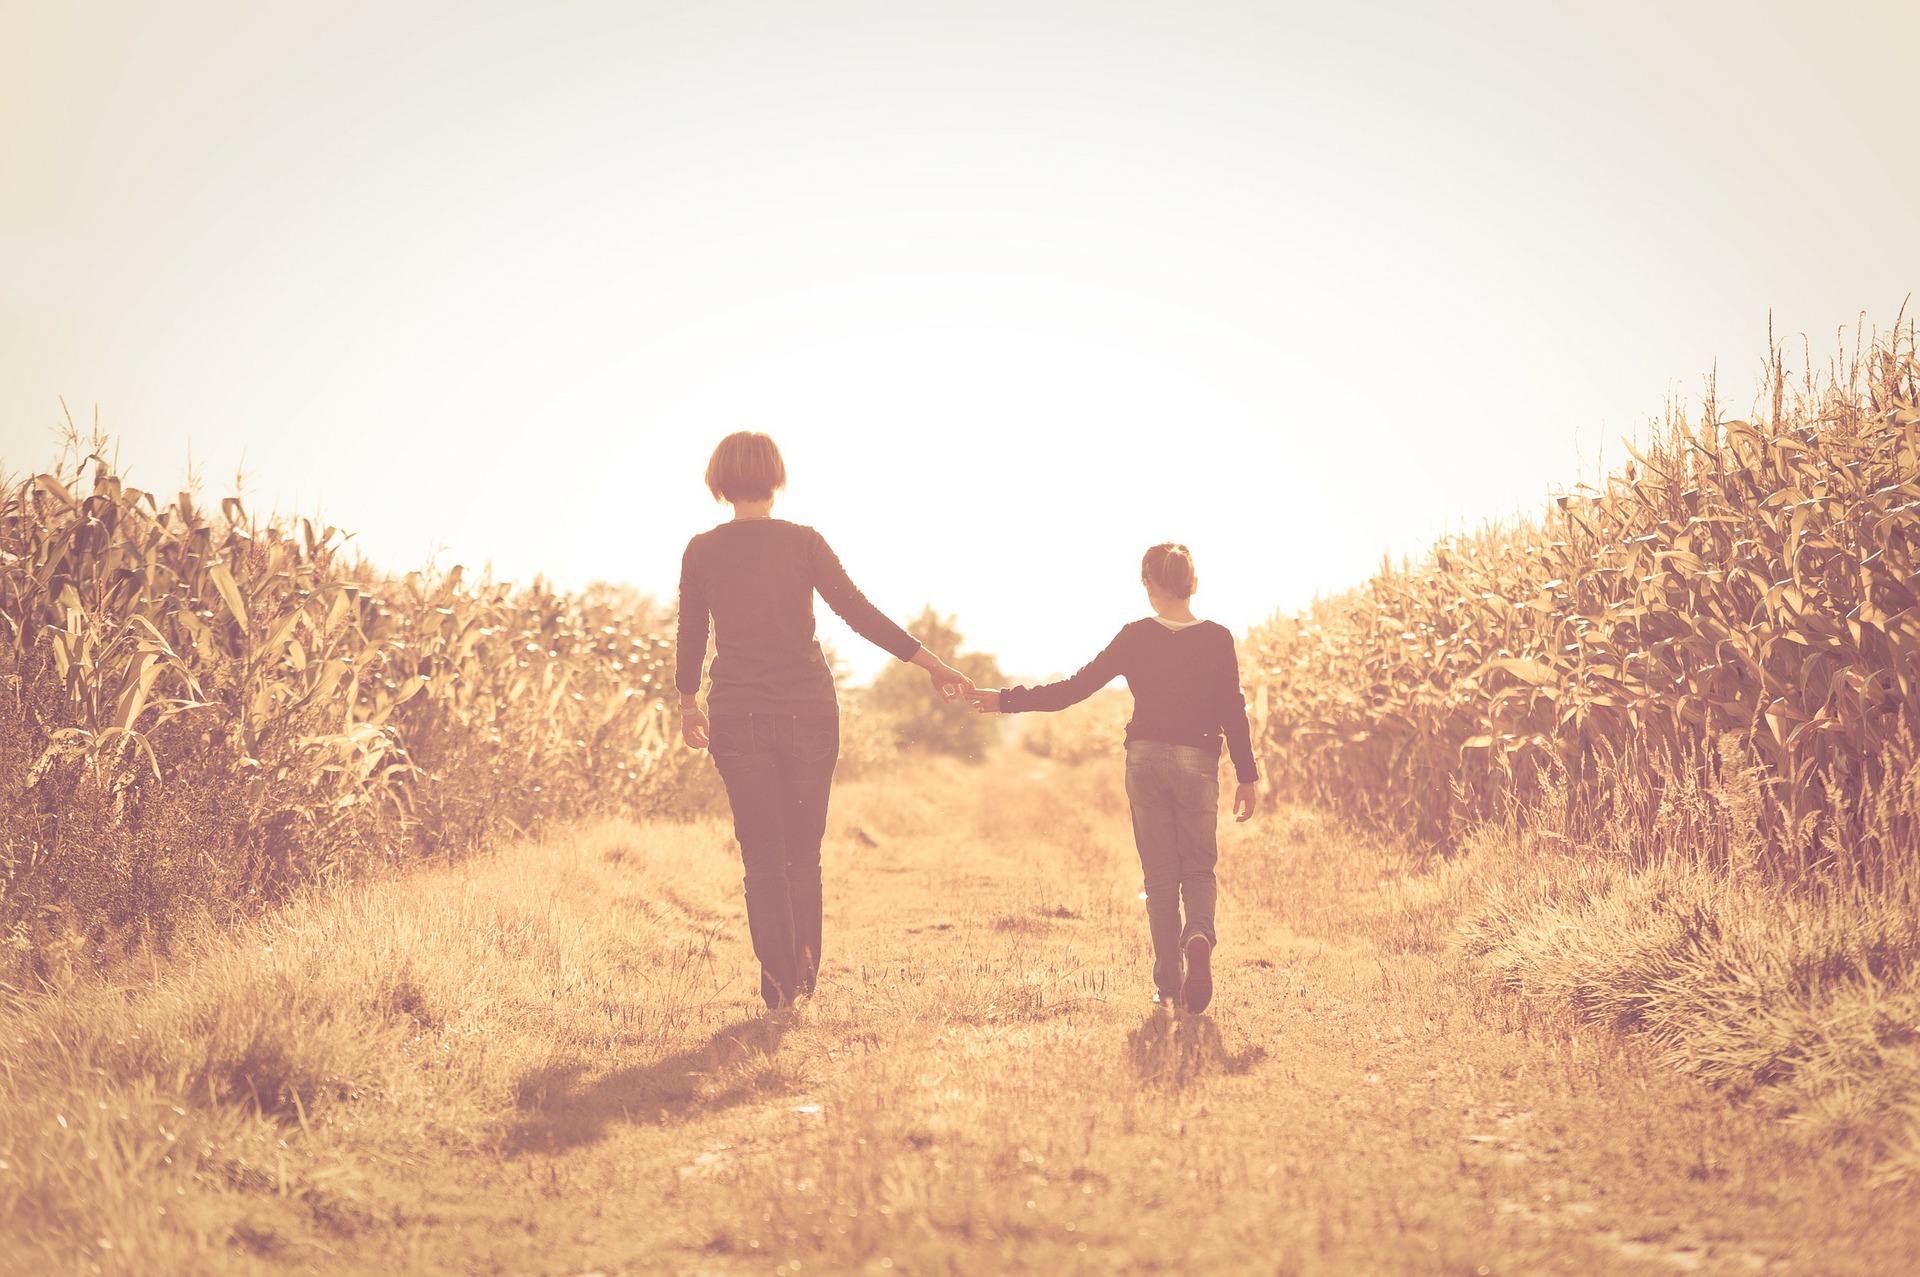 nella campagna assolata in uina strada tra il grano, una donna e un ragazzo di spalle camminano mano nella mano